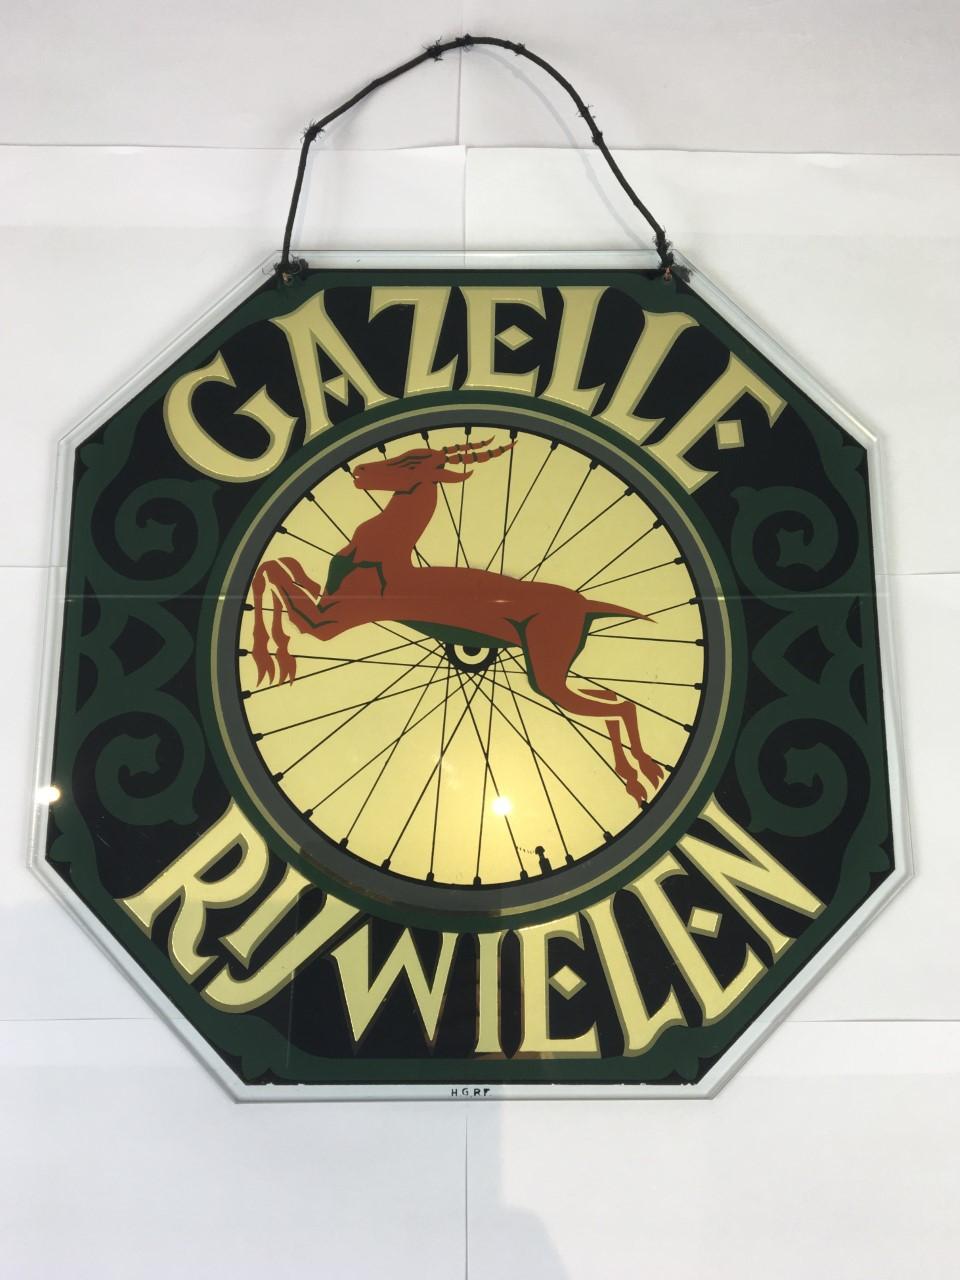 Ancienne enseigne publicitaire en verre pour Gazelle Bicycles, une fabrique de bicyclettes aux Pays-Bas depuis 1892. Cette enseigne publicitaire Art déco est en verre - la publicité derrière le verre. 
Beau design vert et noir, lettres dorées avec